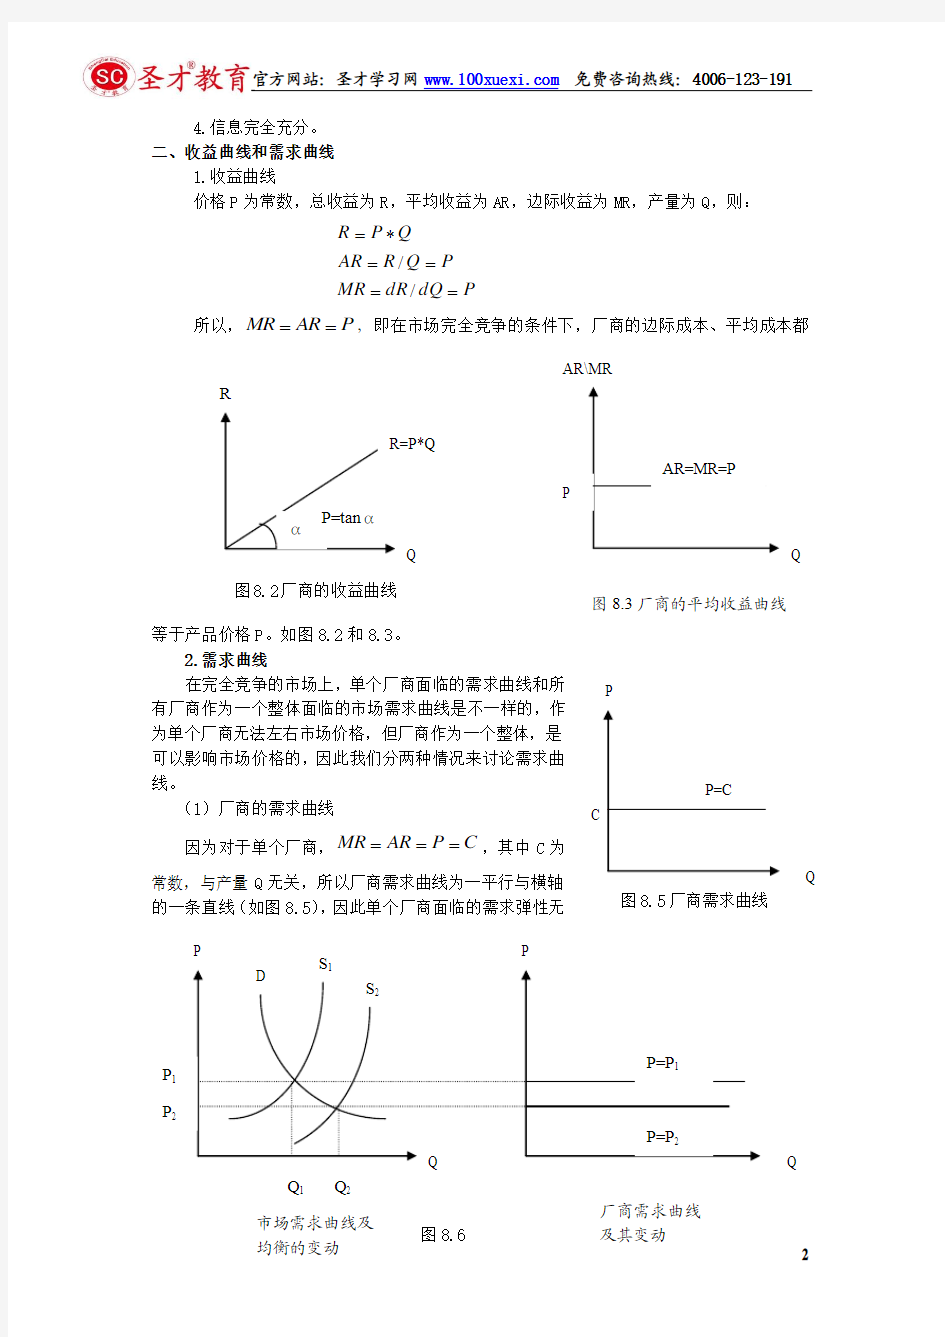 北京大学微观经济学教案 第八章   市场结构与竞争均衡